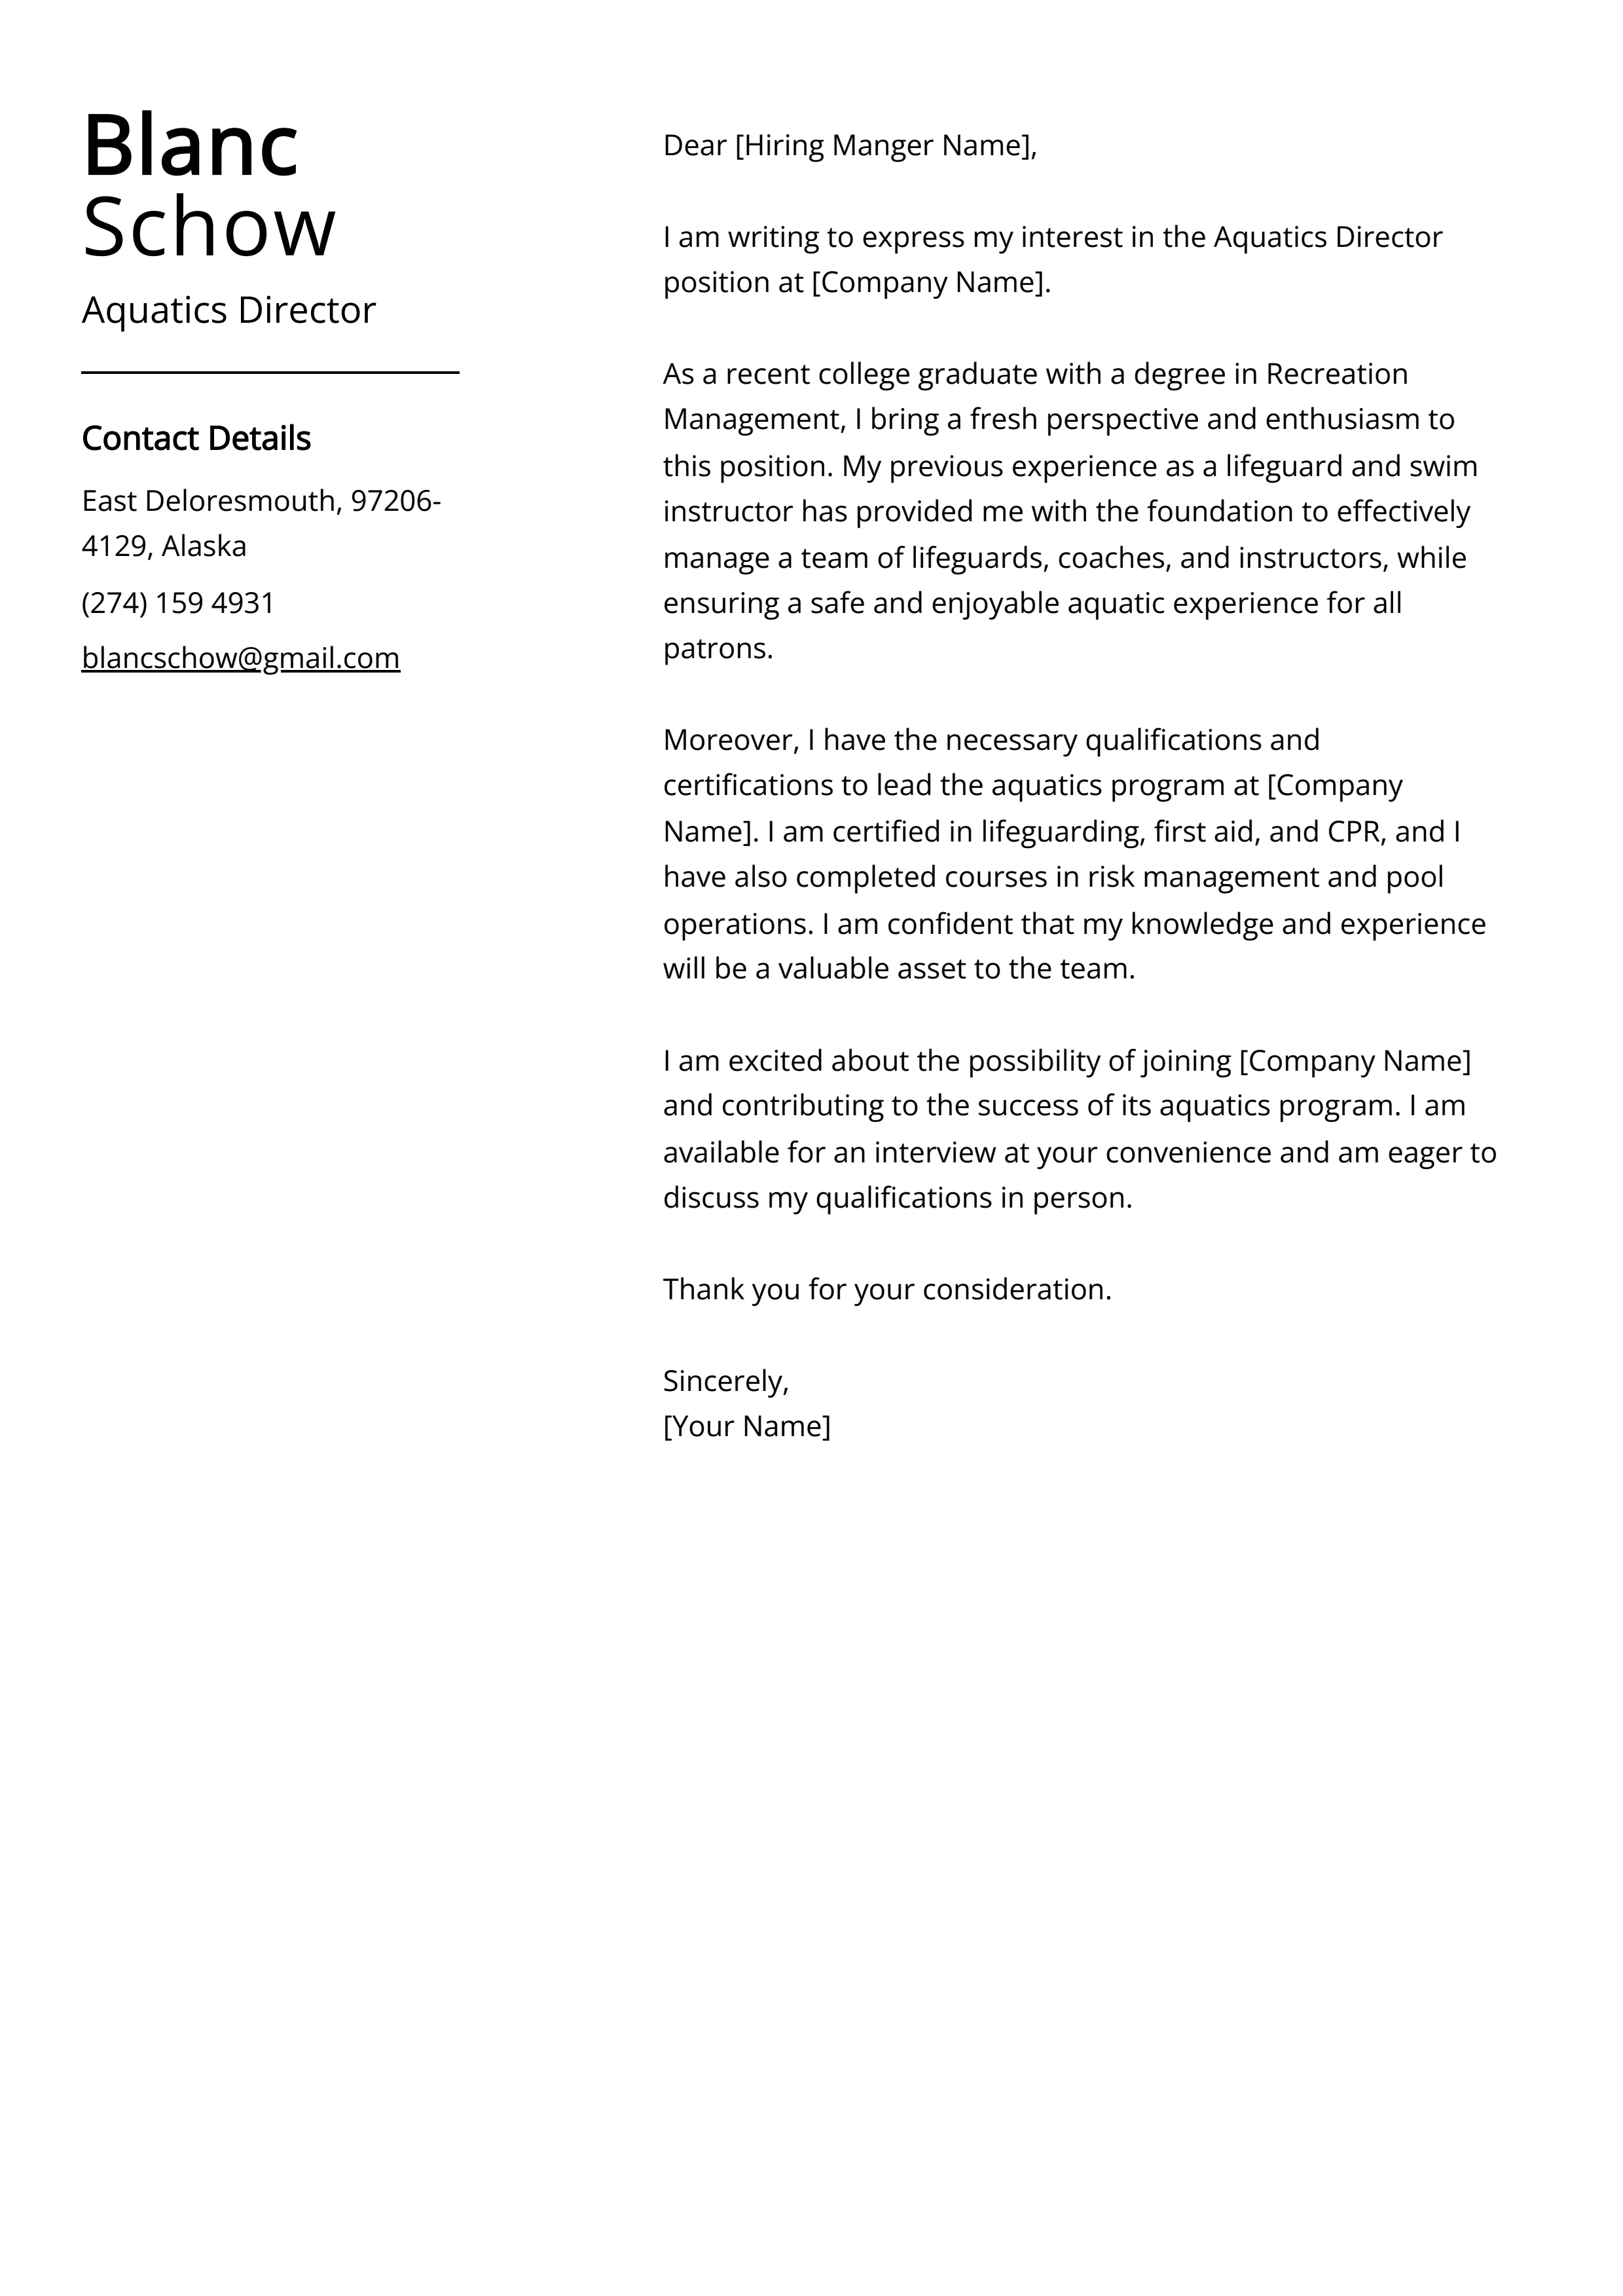 Aquatics Director Cover Letter Example